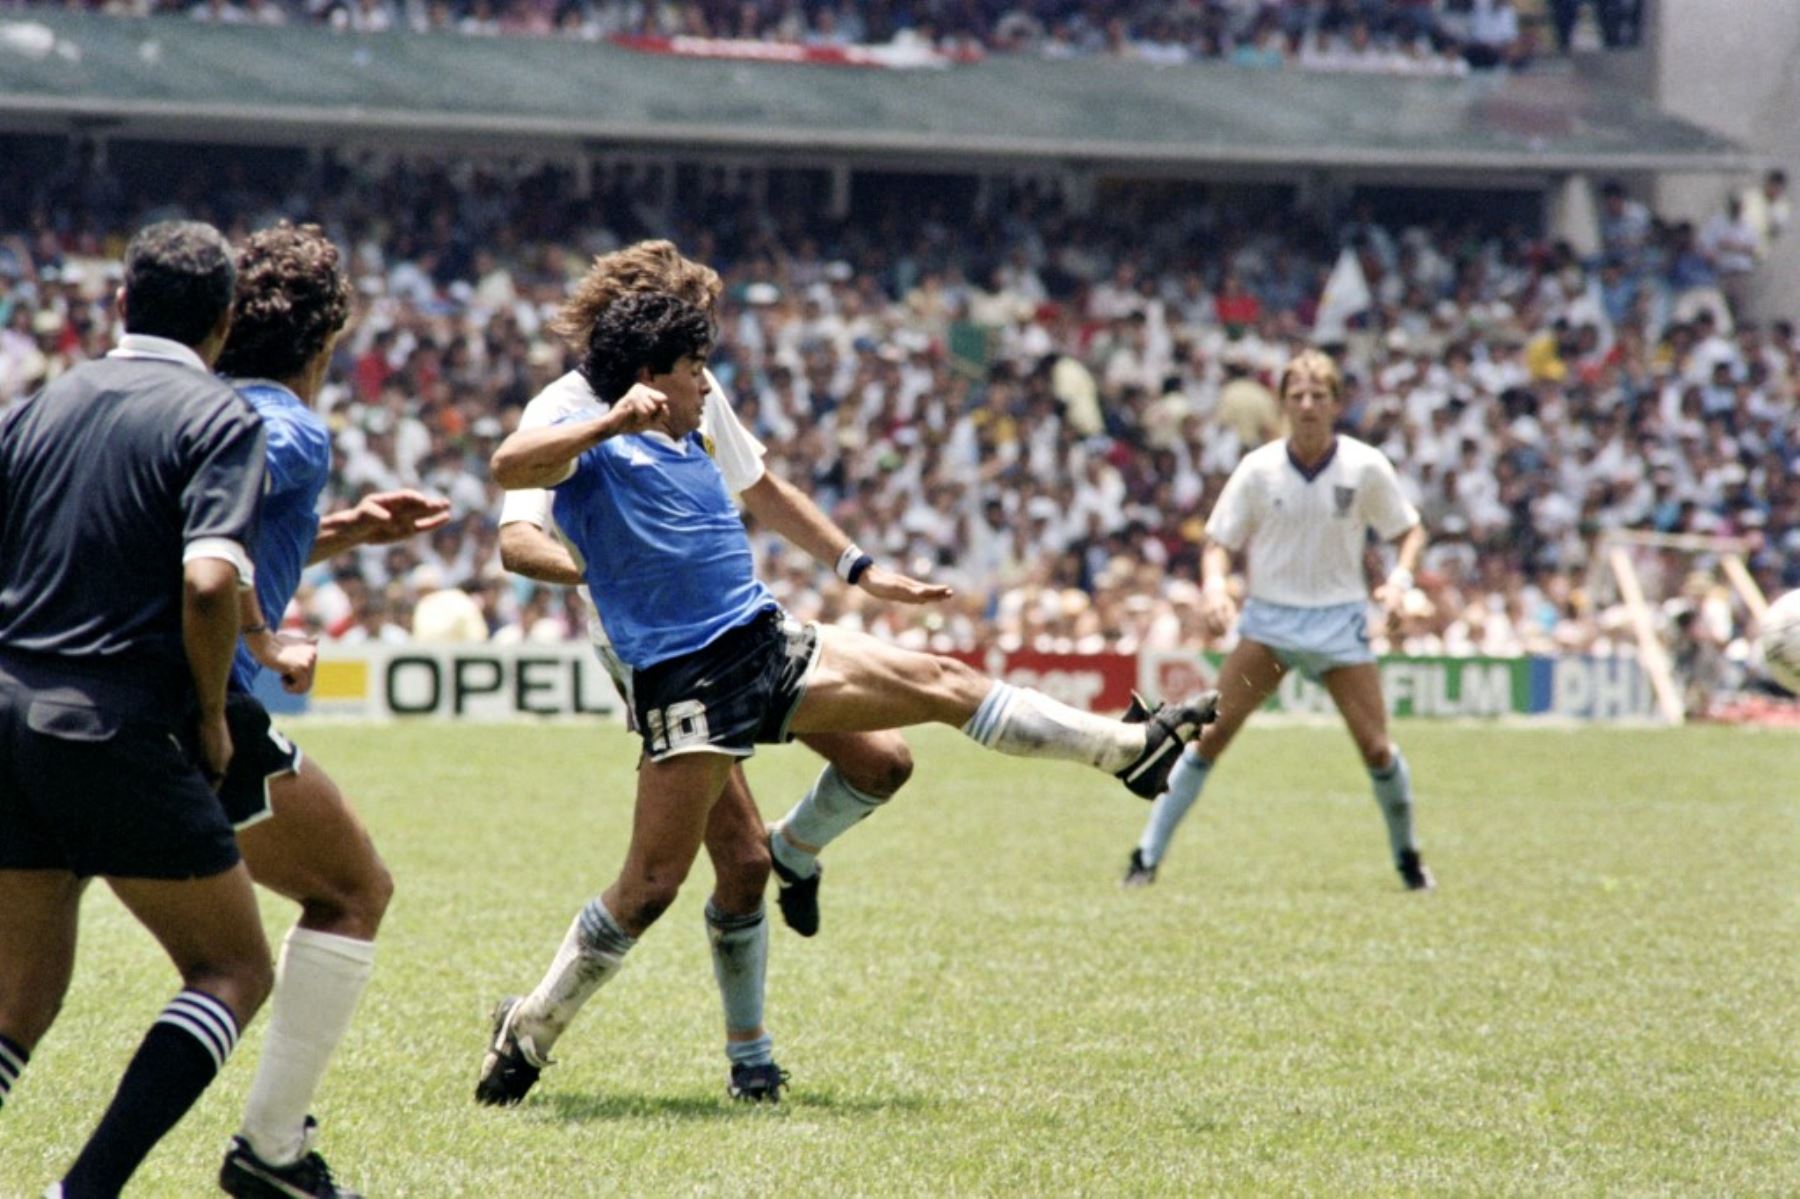 Se cumplen 35 años del gol de Diego Armando Maradona a los Ingleses en el mundial México 86, considerado por muchos como el mejor gol en la historia de los mundiales. Ese día Argentina venció 2-1 a Inglaterra con dos goles de Maradona, incluido uno con la mano. Foto: AFP